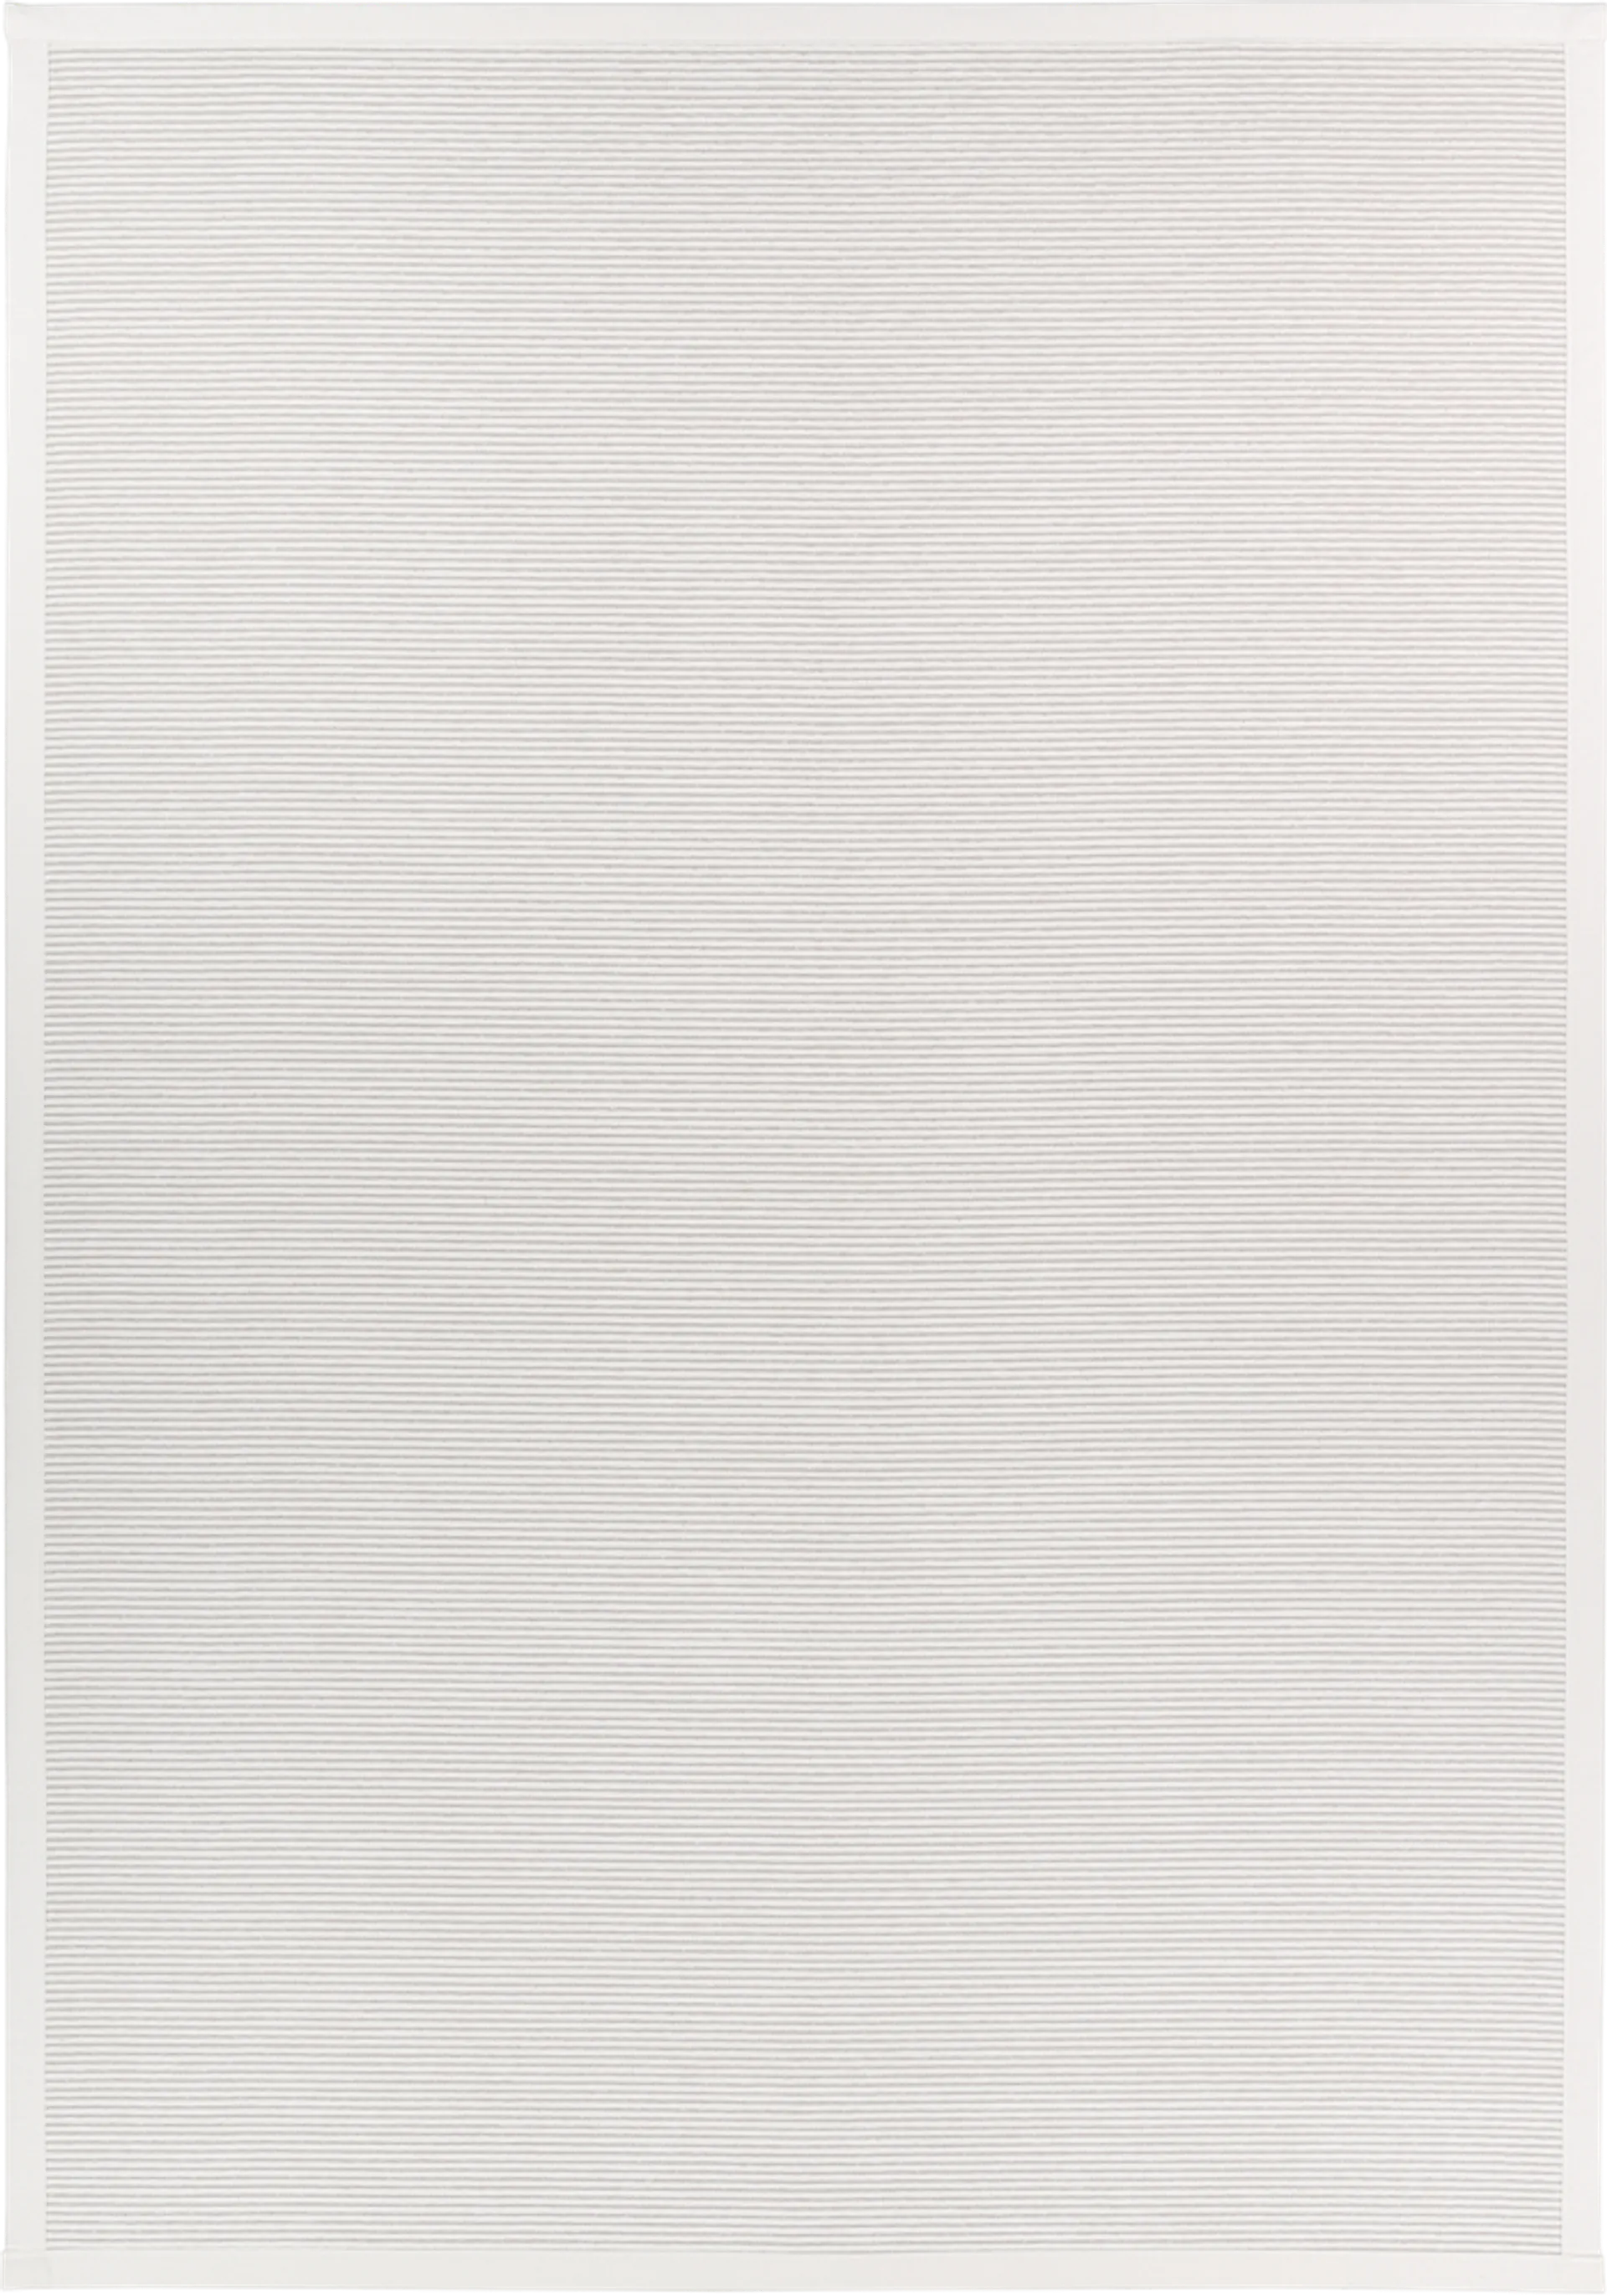 Narma kääntömatto NORDIC 2-2003 160x230 cm valkoinen - 3